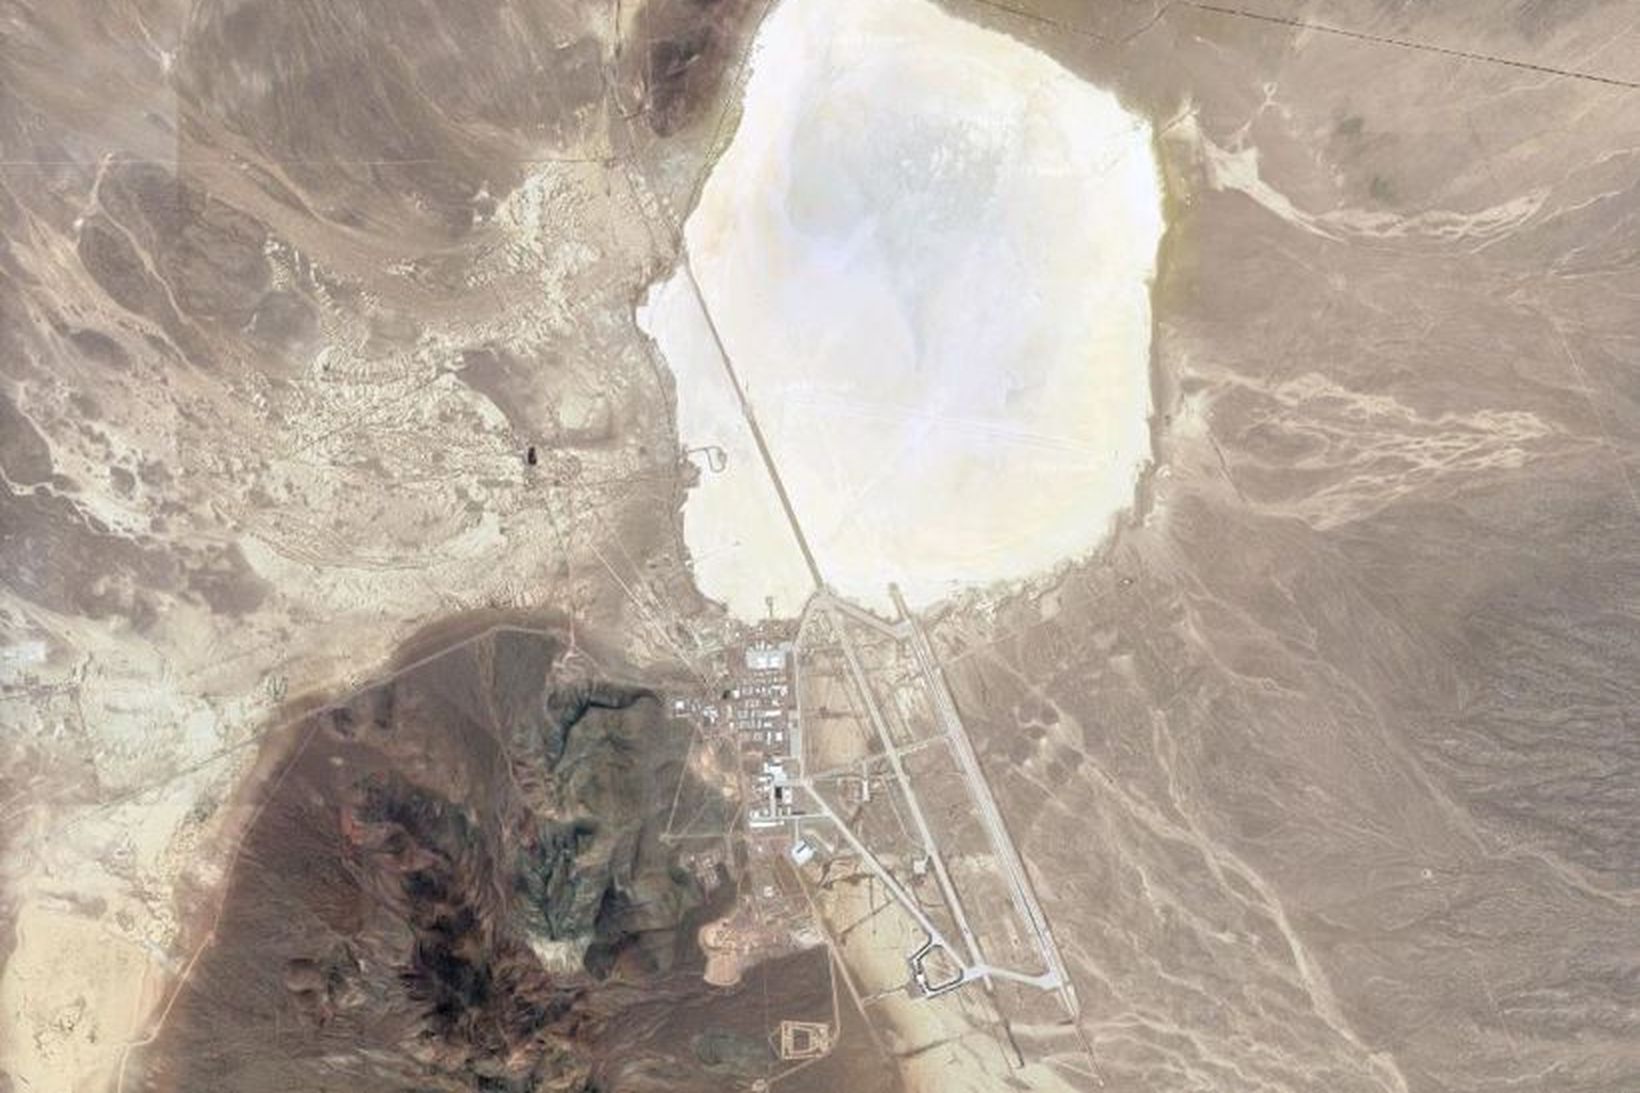 Margar mýtur hafa spunnist upp um Area 51 í Nevada.